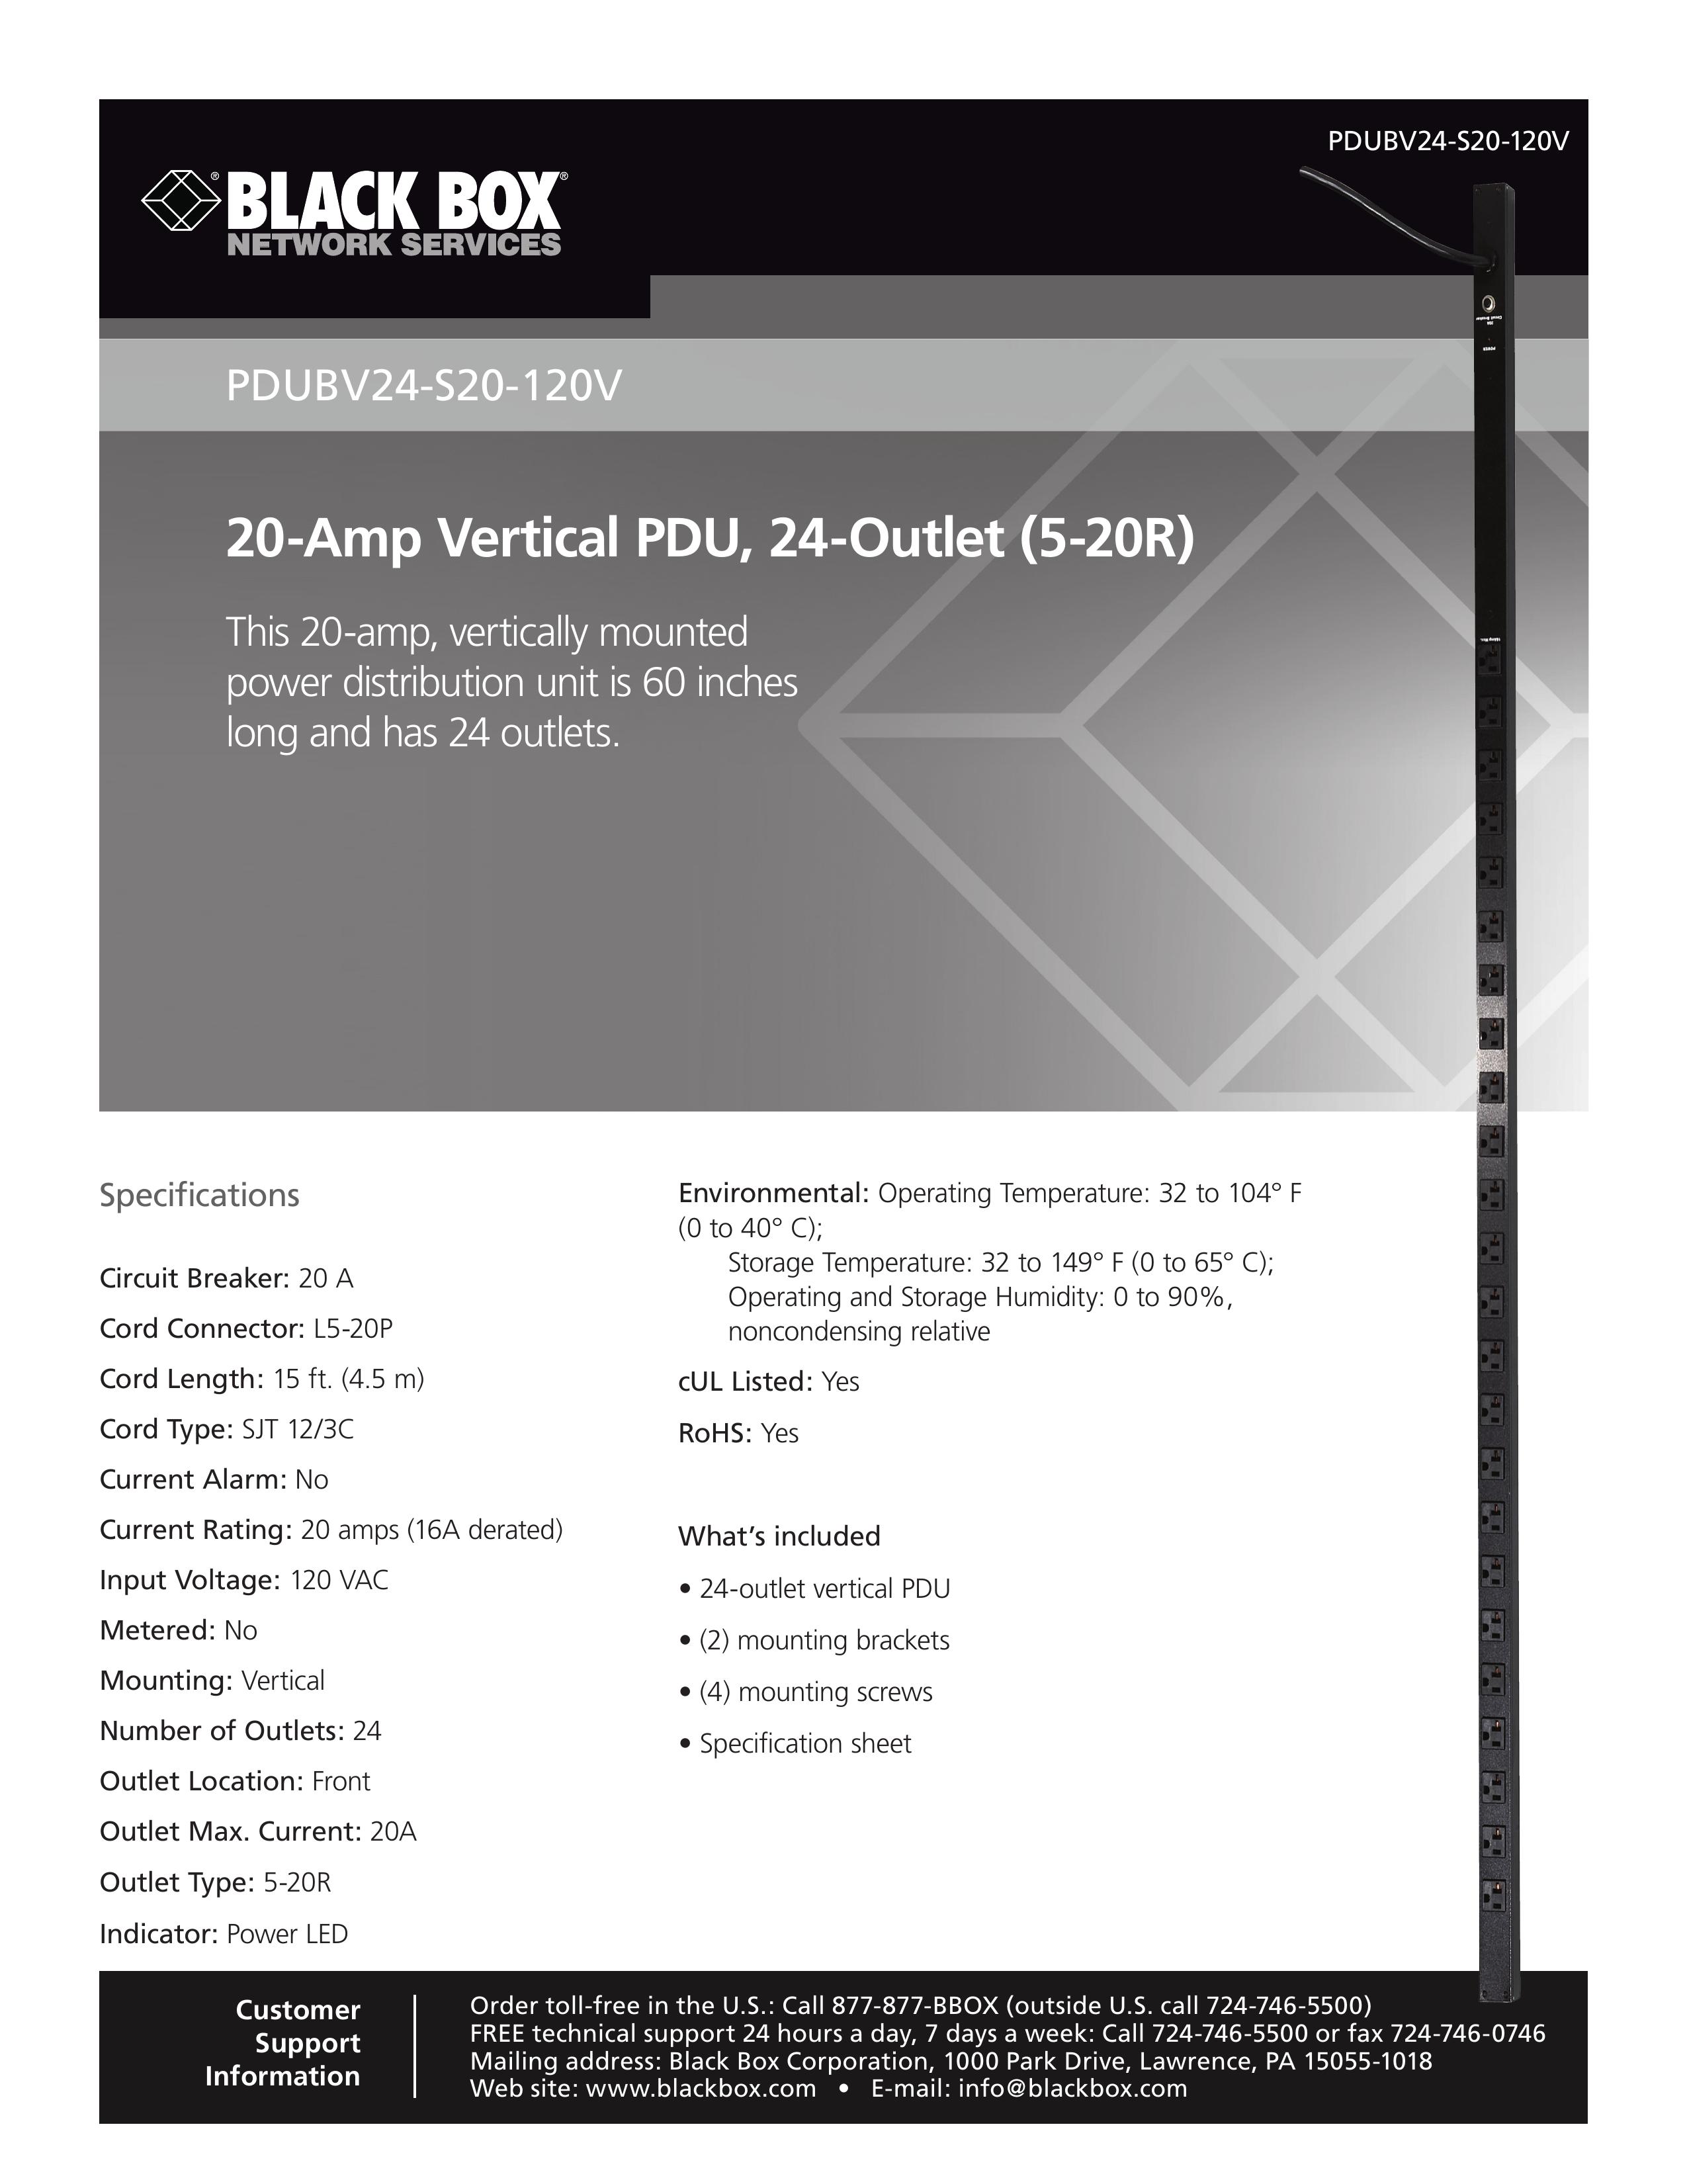 Black Box PDUBV24-S20-120V Outboard Motor User Manual